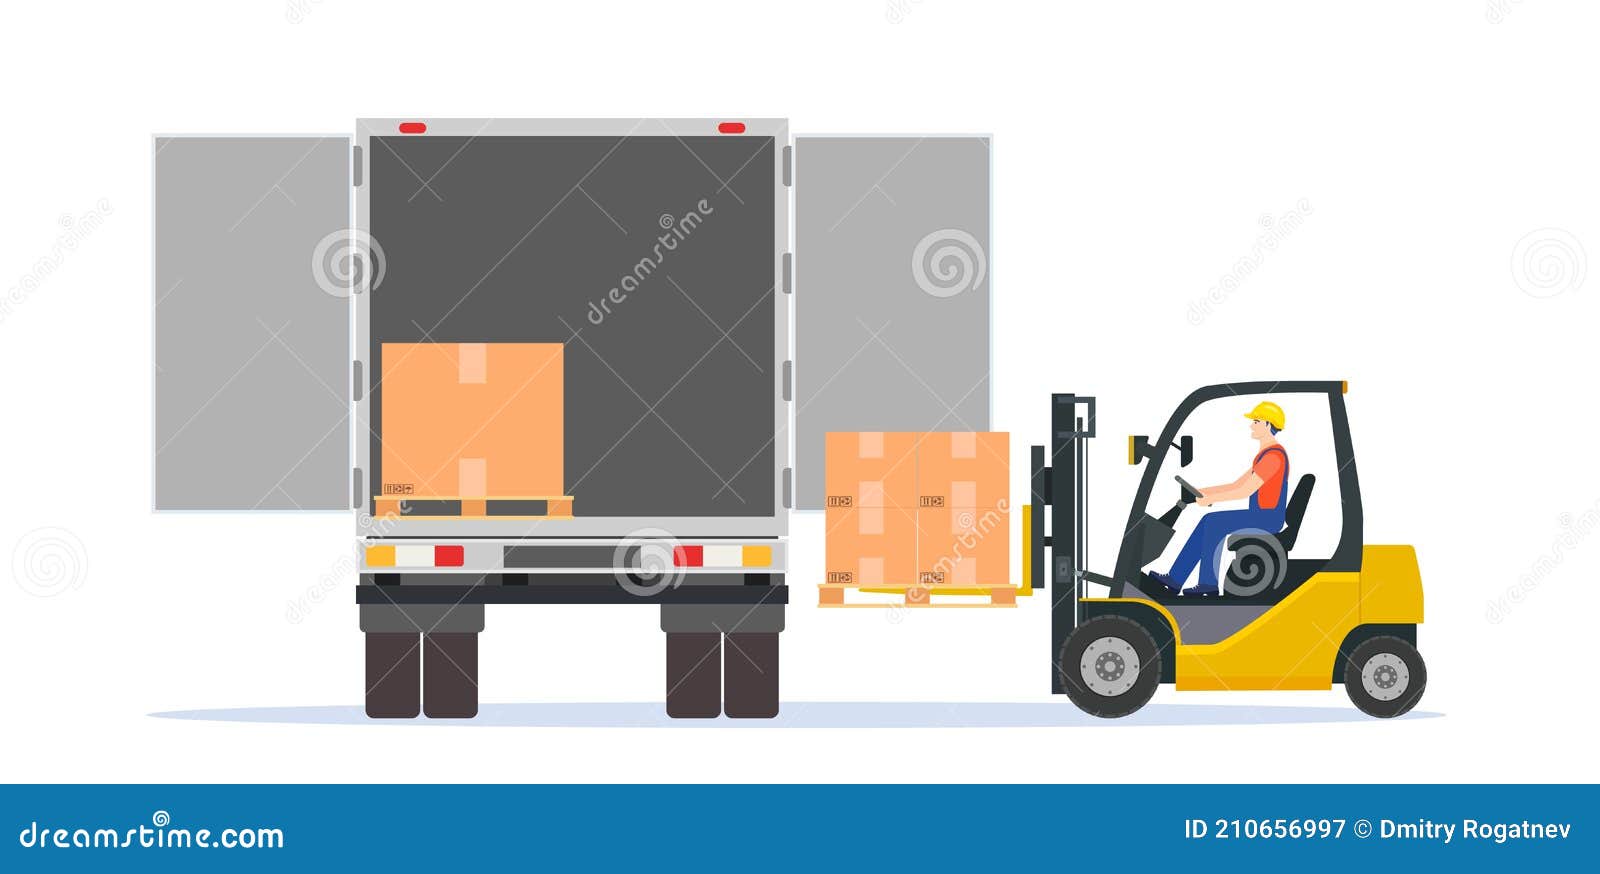 Pallet Truck Vector Stock Illustrations – 6,738 Pallet Truck